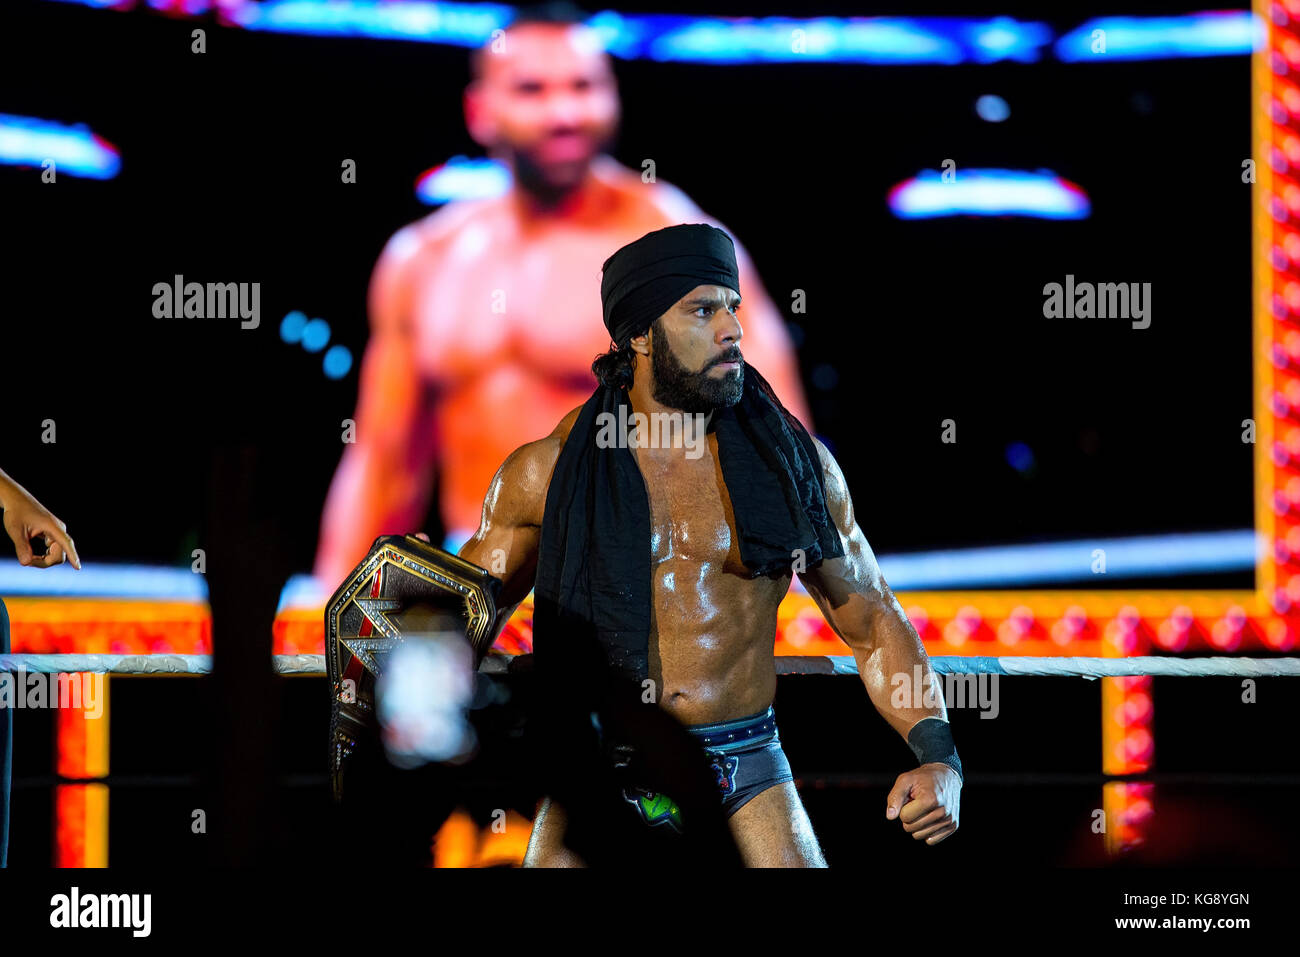 BARCELONA-NOV 4: The Wrestler Jinder Mahal in Aktion bei WWE Live auf der Palau Sant Jordi am 4. November 2017 in Barcelona, Spanien. Stockfoto